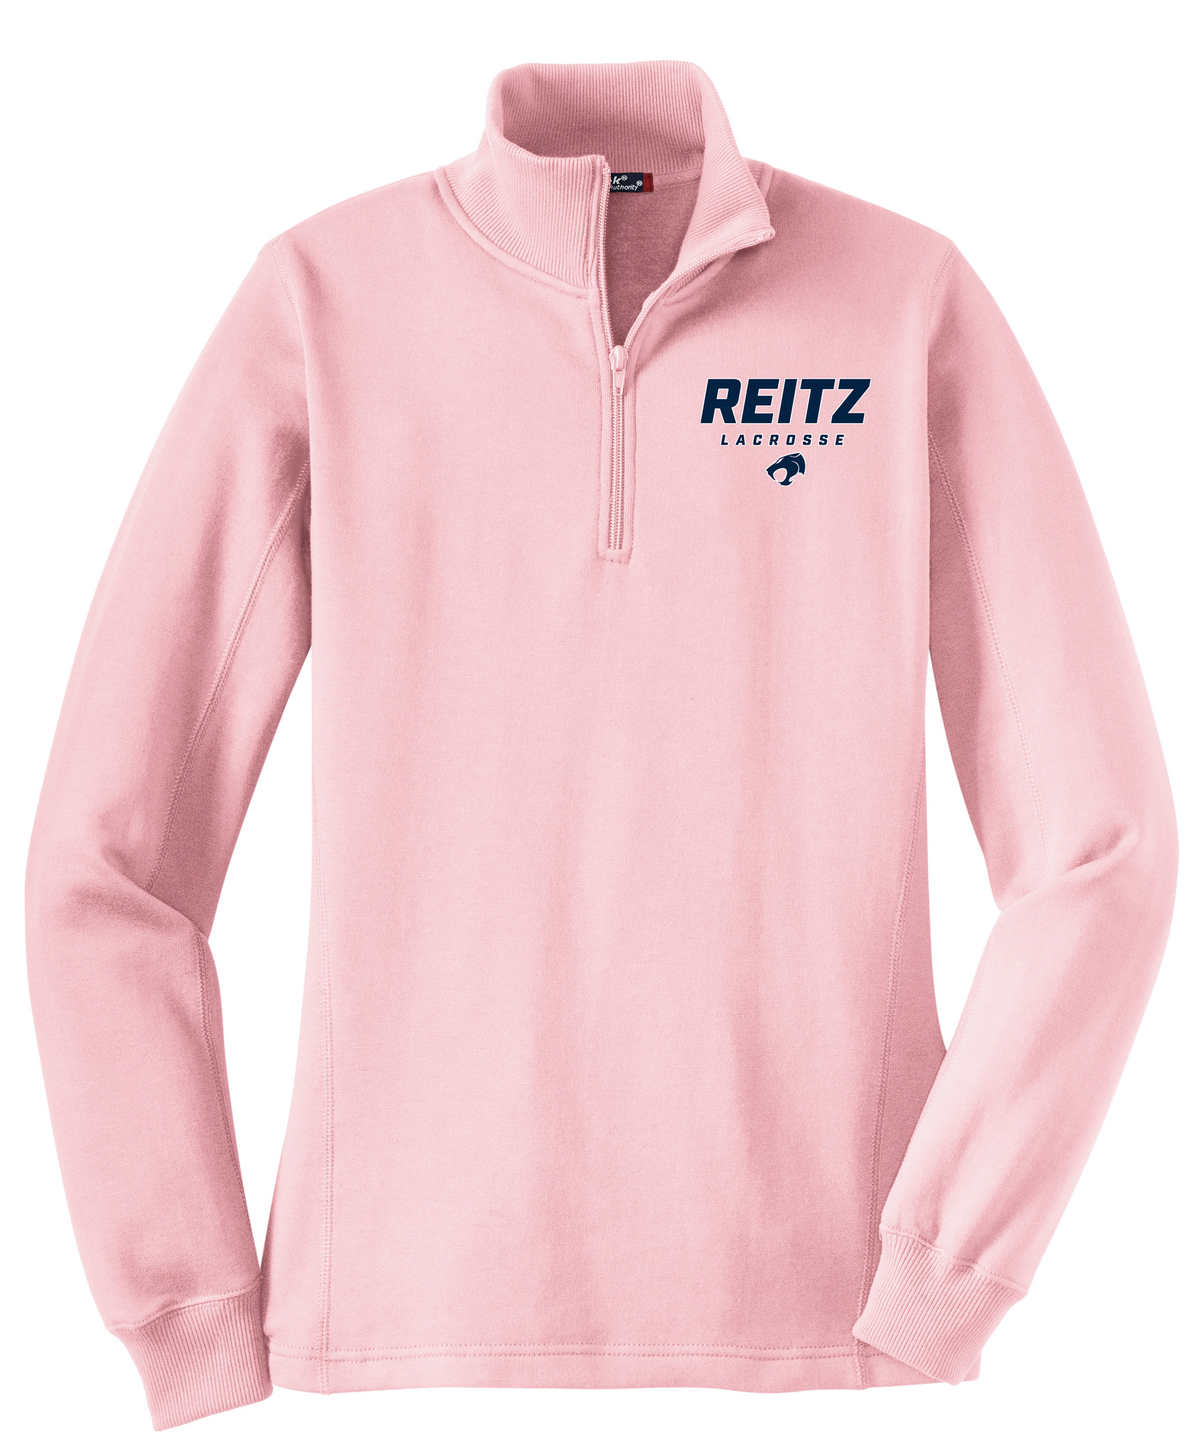 Reitz Lacrosse Women's Pink 1/4 Zip Fleece